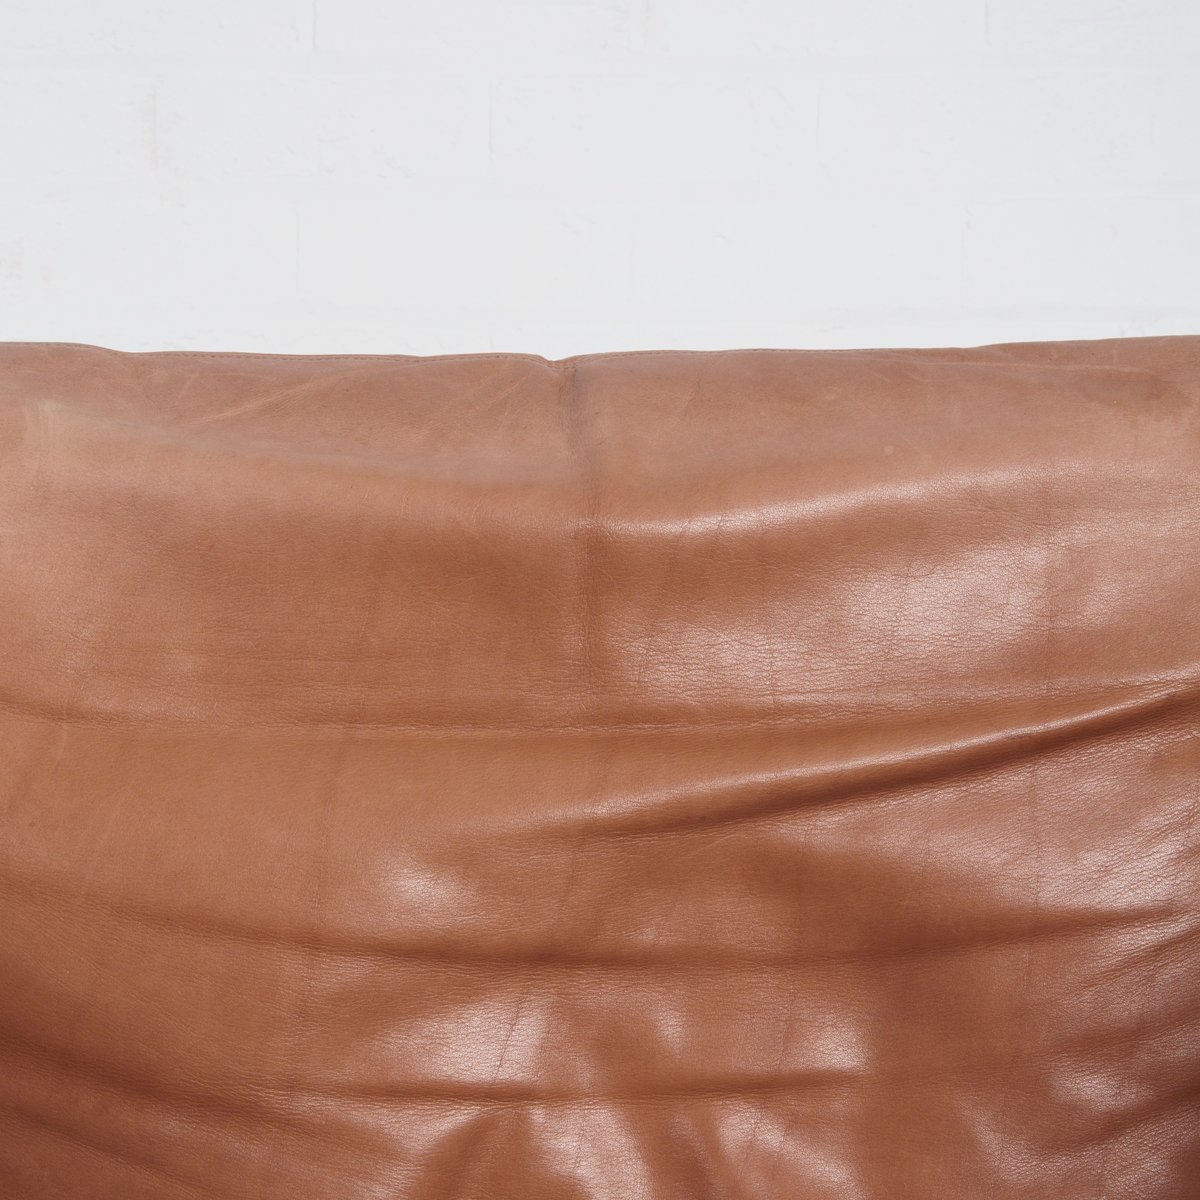 Vintage Tan Leather 48